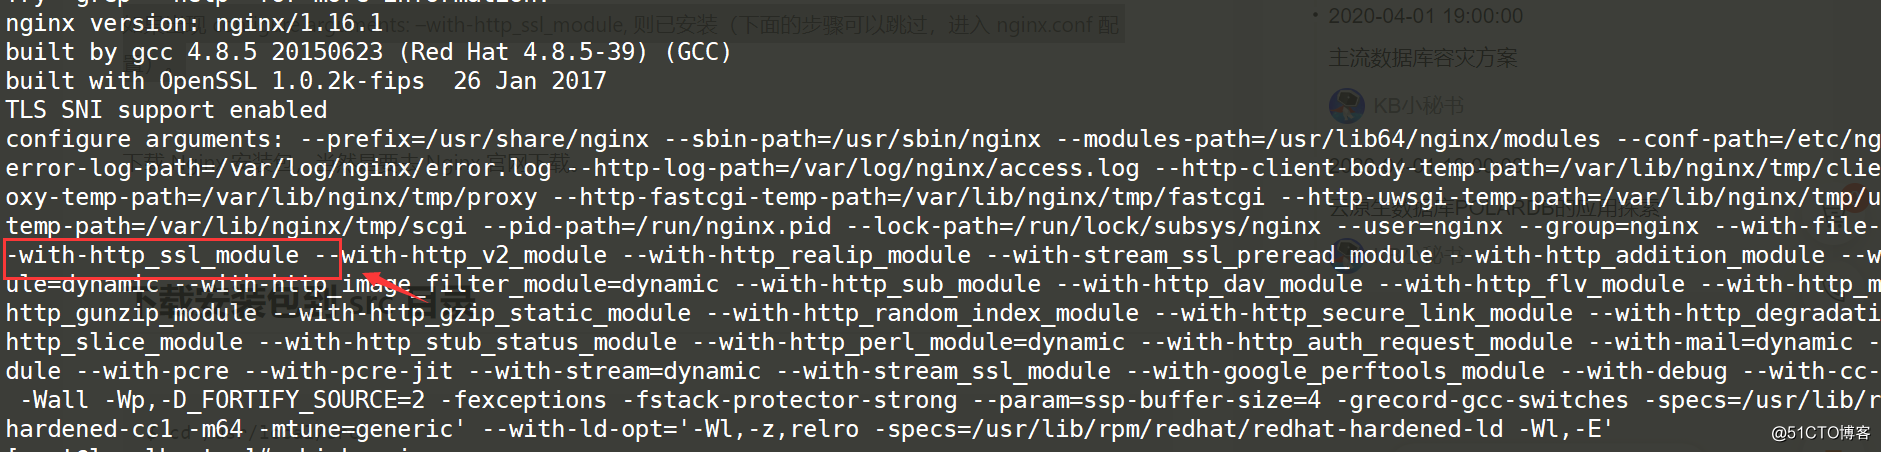 Zabbix utilise un certificat SSL pour implémenter la connexion https